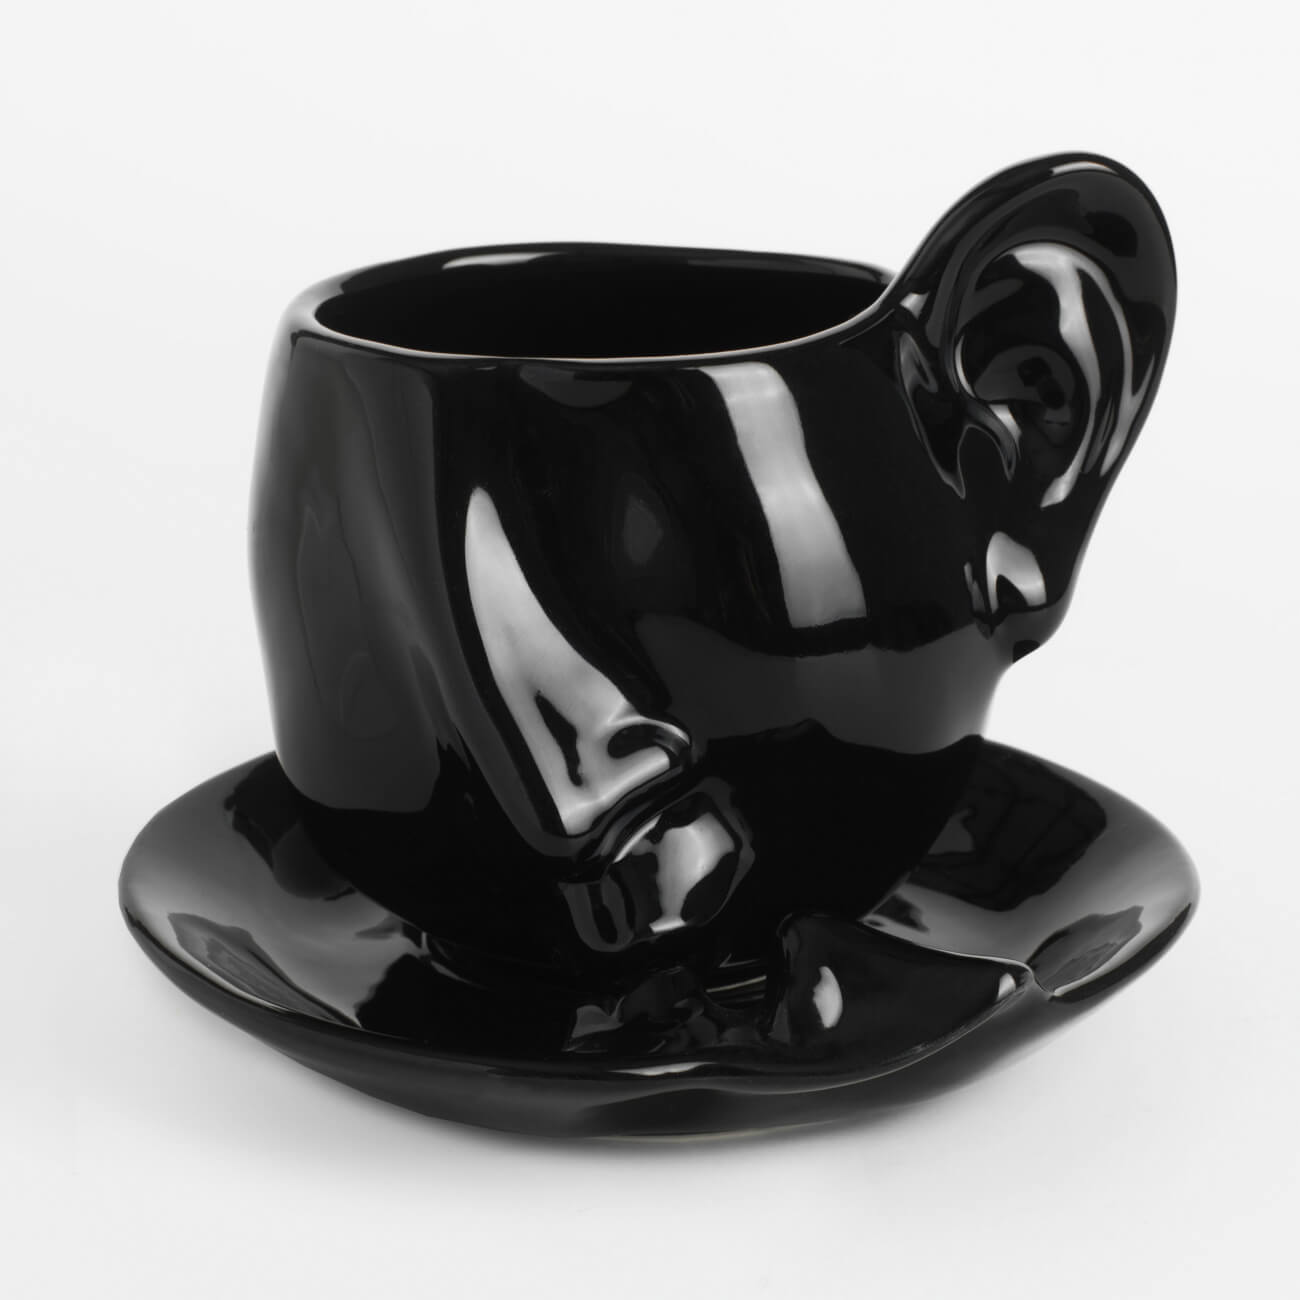 Пара чайная, 1 перс, 2 пр, 320 мл, керамика, черная, Поцелуй, Baise ложка с гравировкой чайная